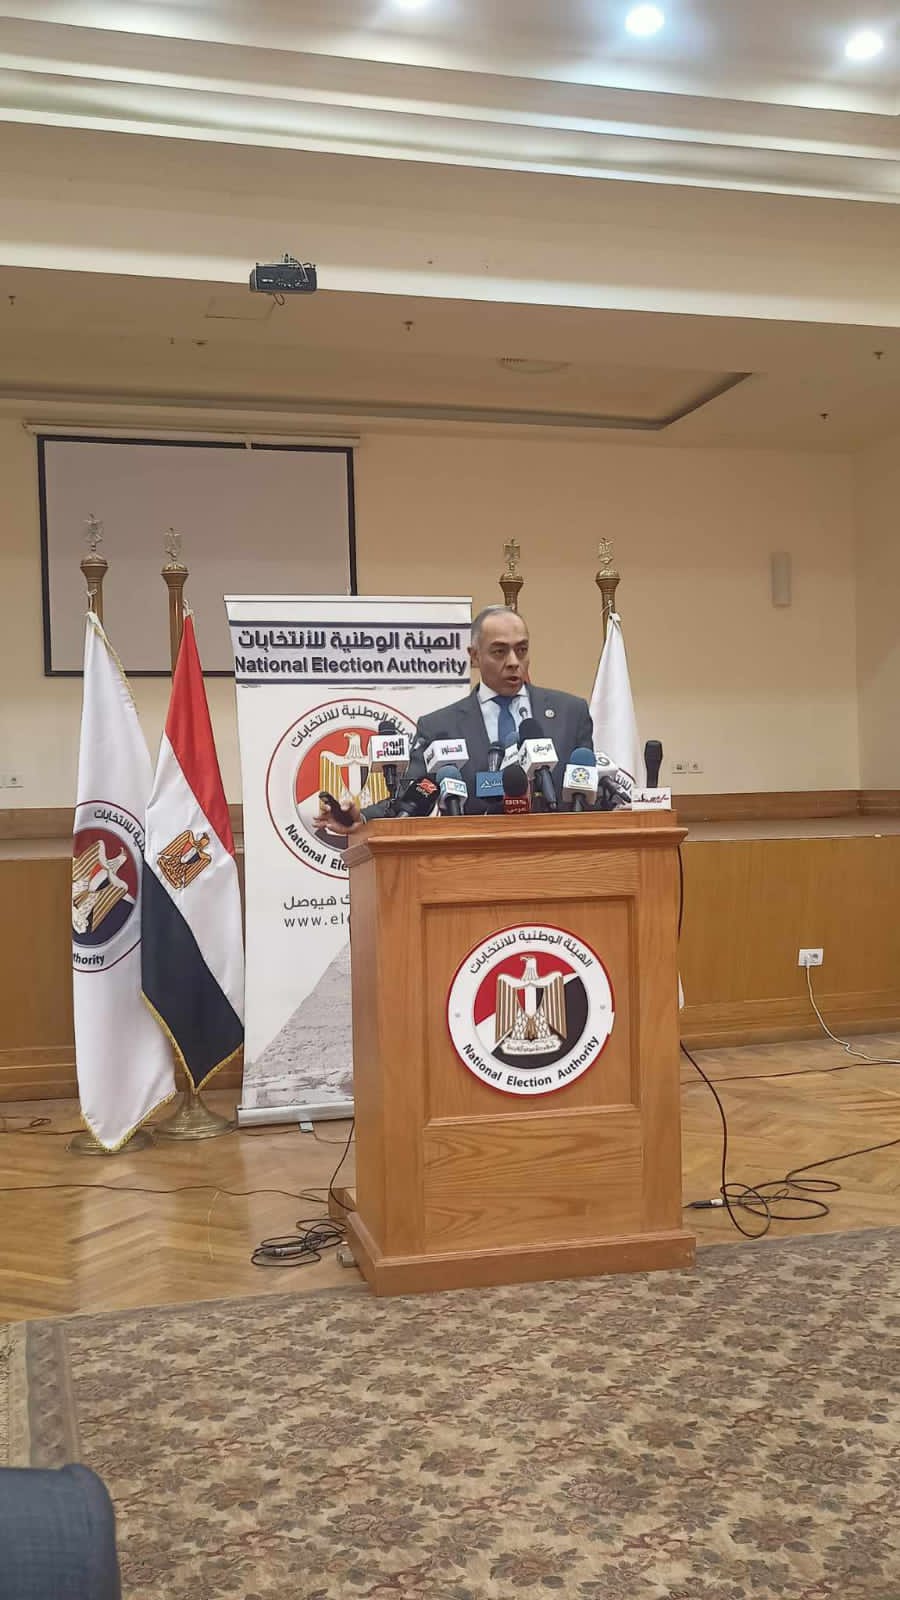 الهيئة الوطنية للإنتخابات المصرية تعلن عن اسم رئيس البلاد الأثنين المقبل